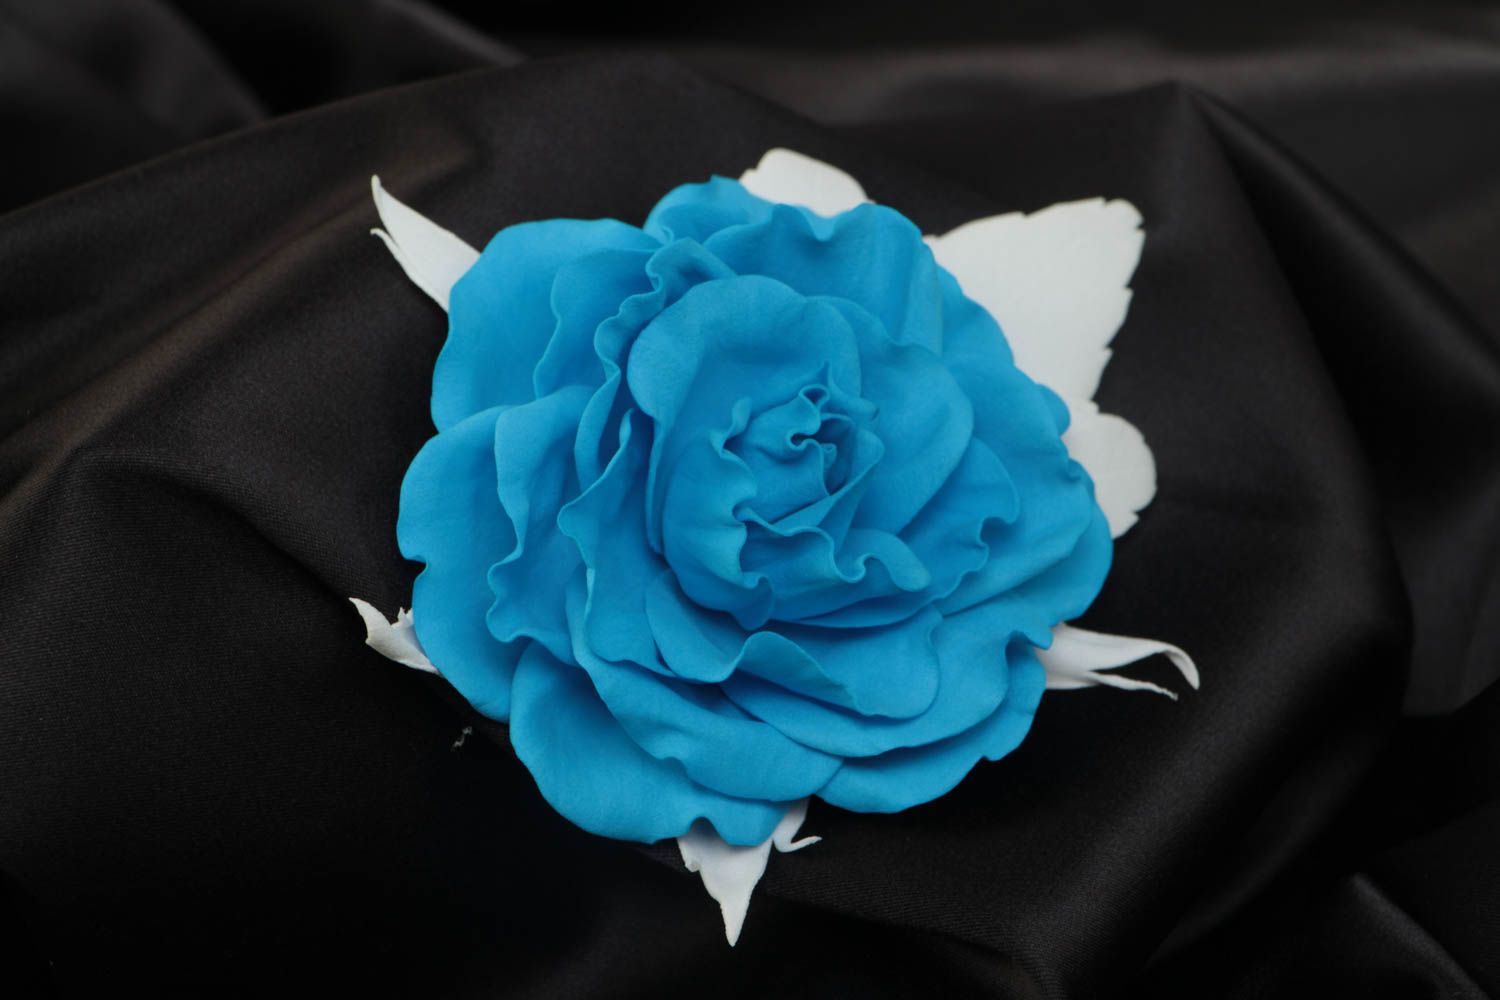 Брошь с цветком из фоамирана роза голубая с белым красивая крупная ручной работы фото 1